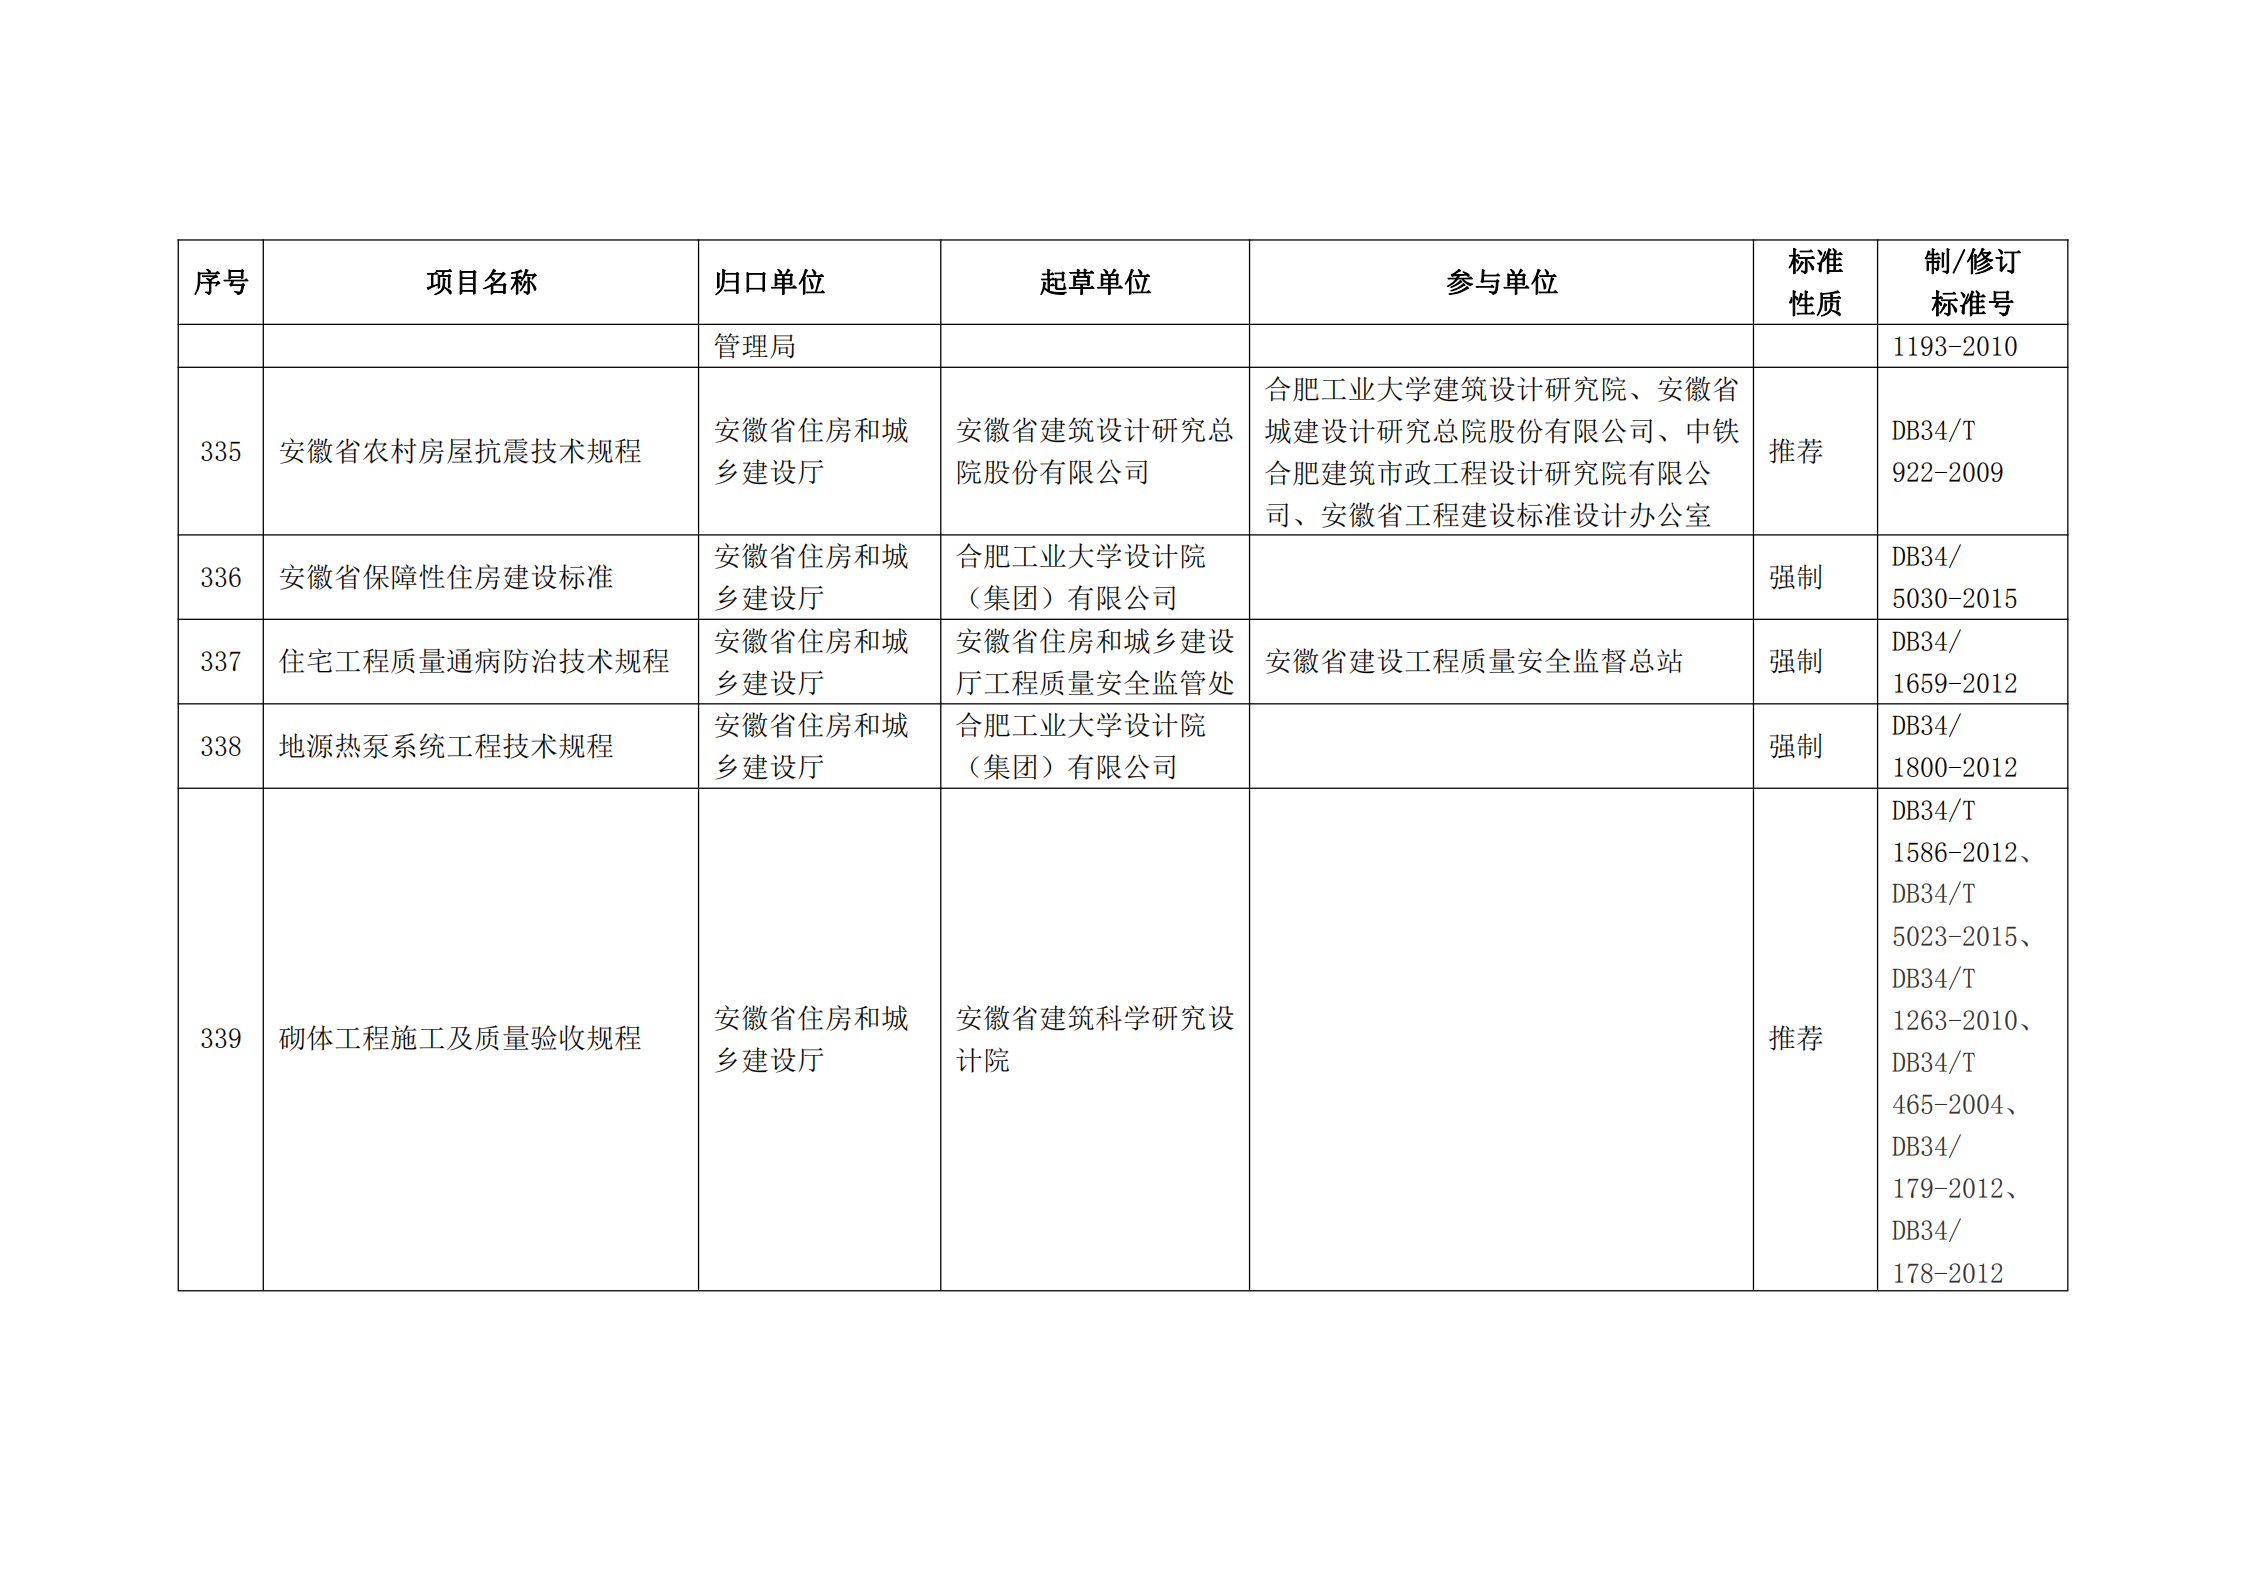 2020 年第二批安徽省地方标准制、修订计划项目汇总表(图37)